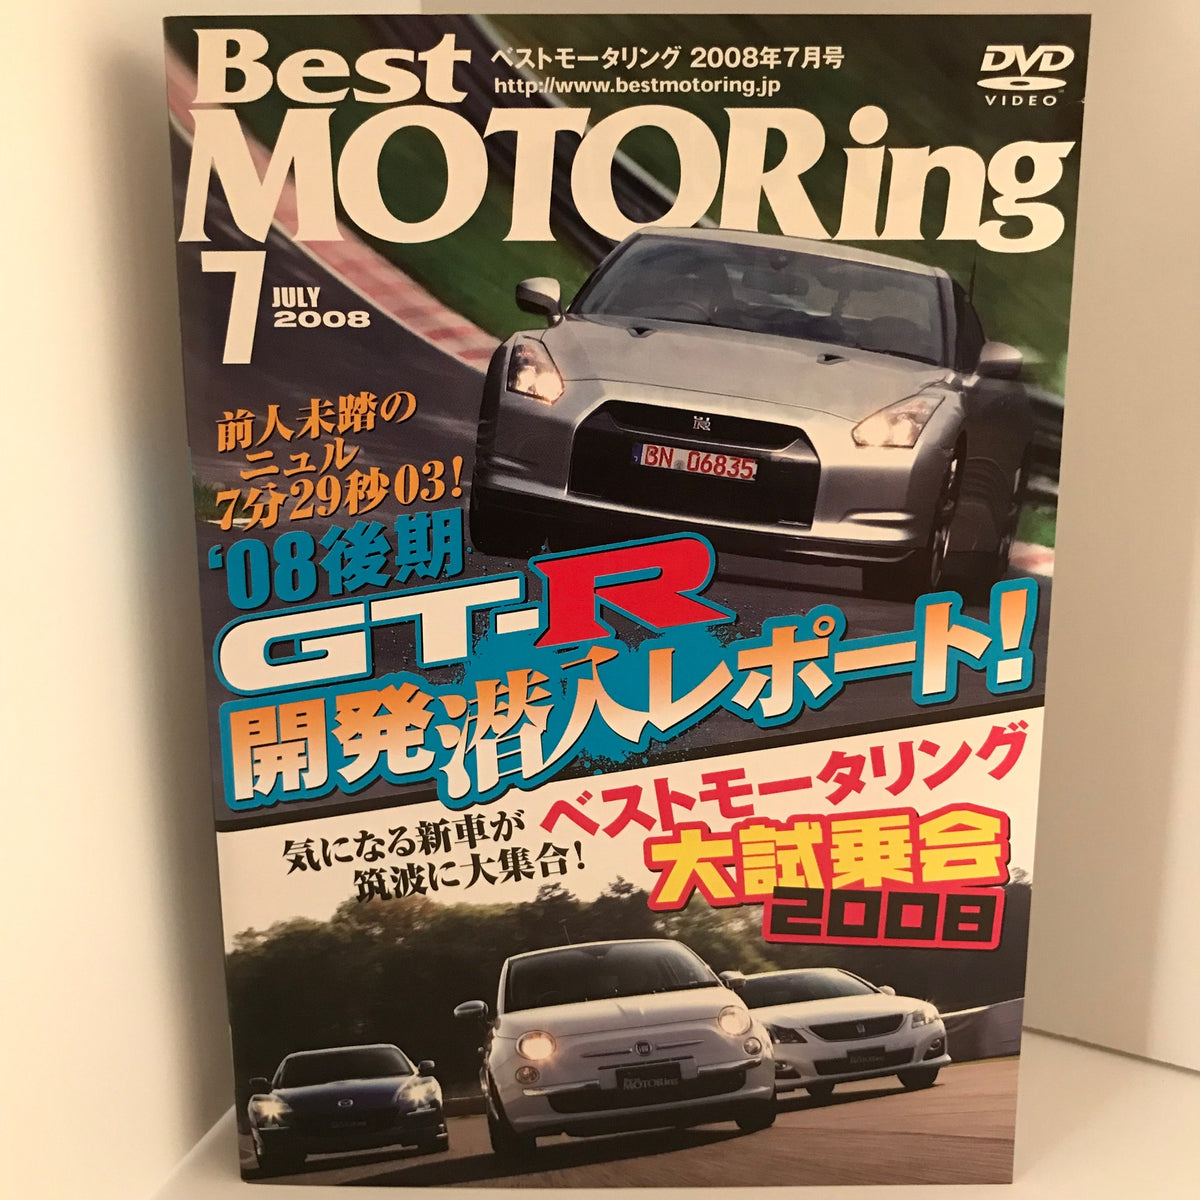 ベストモータリング 22本 Best MOTORing - DVD/ブルーレイ